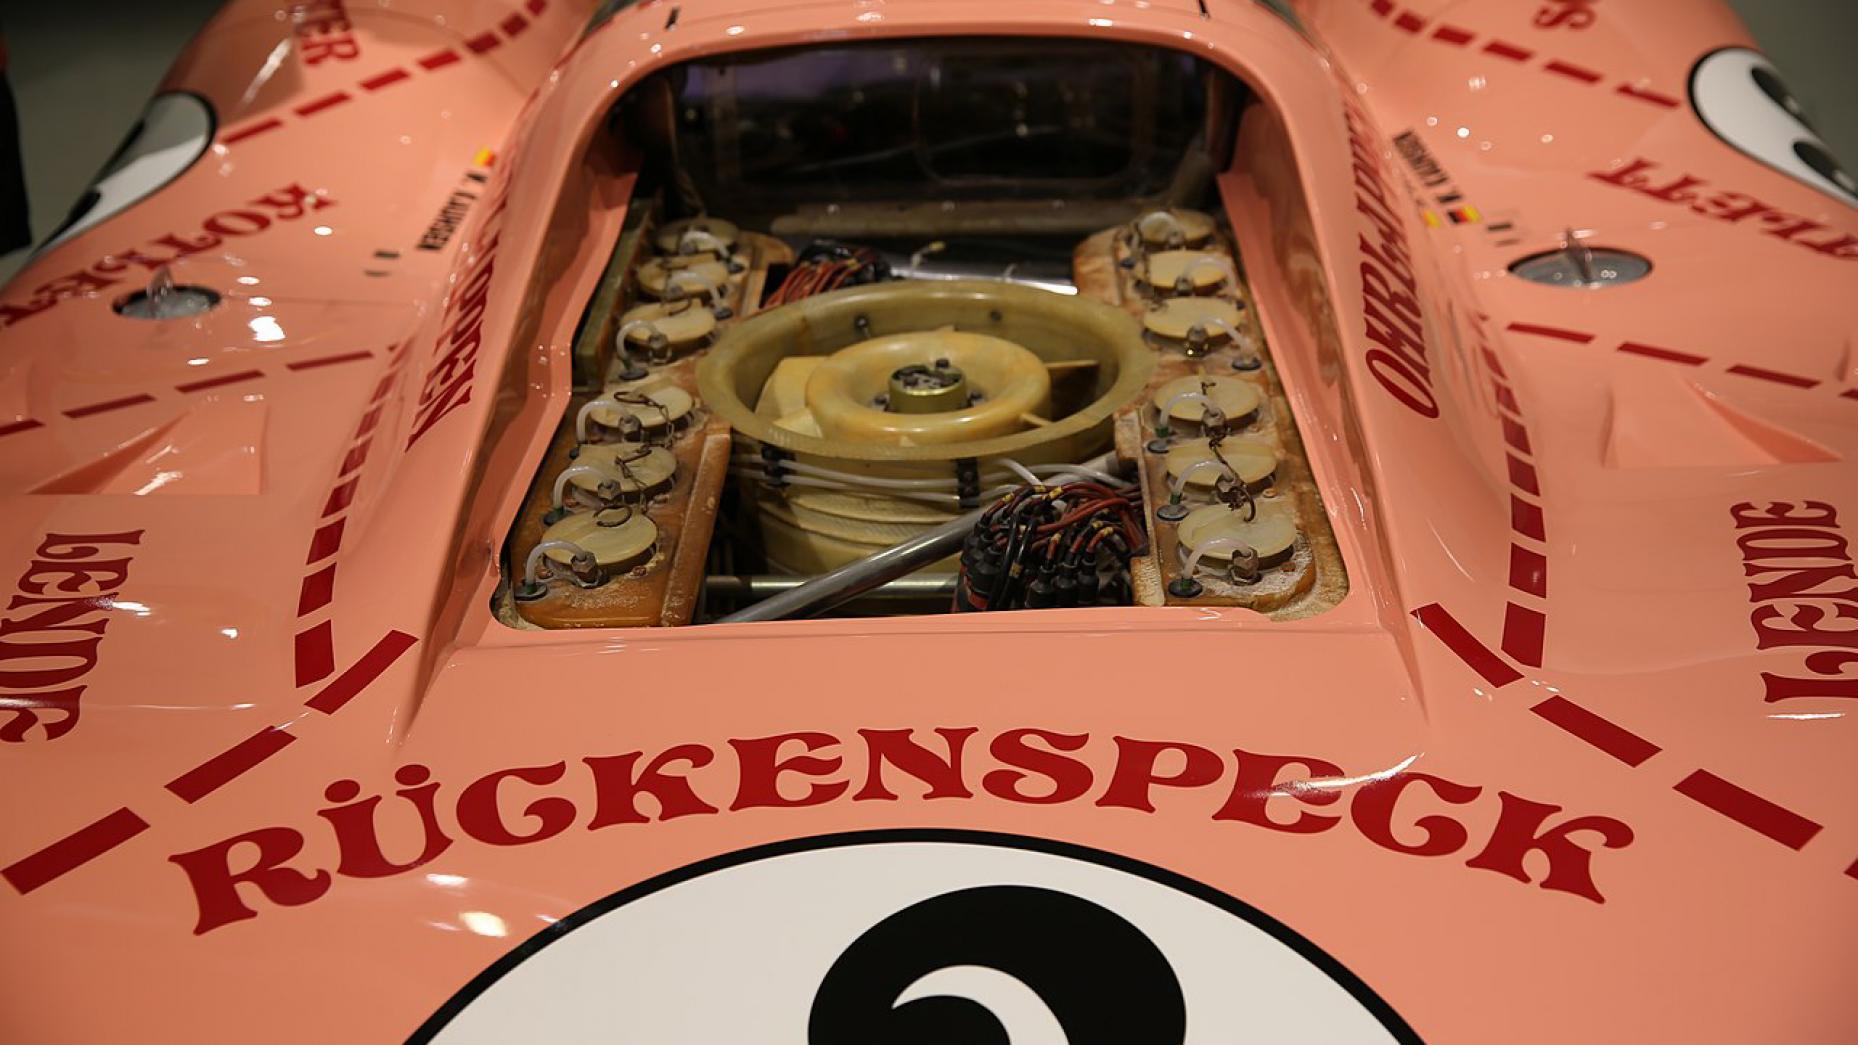 5. Porsche 917